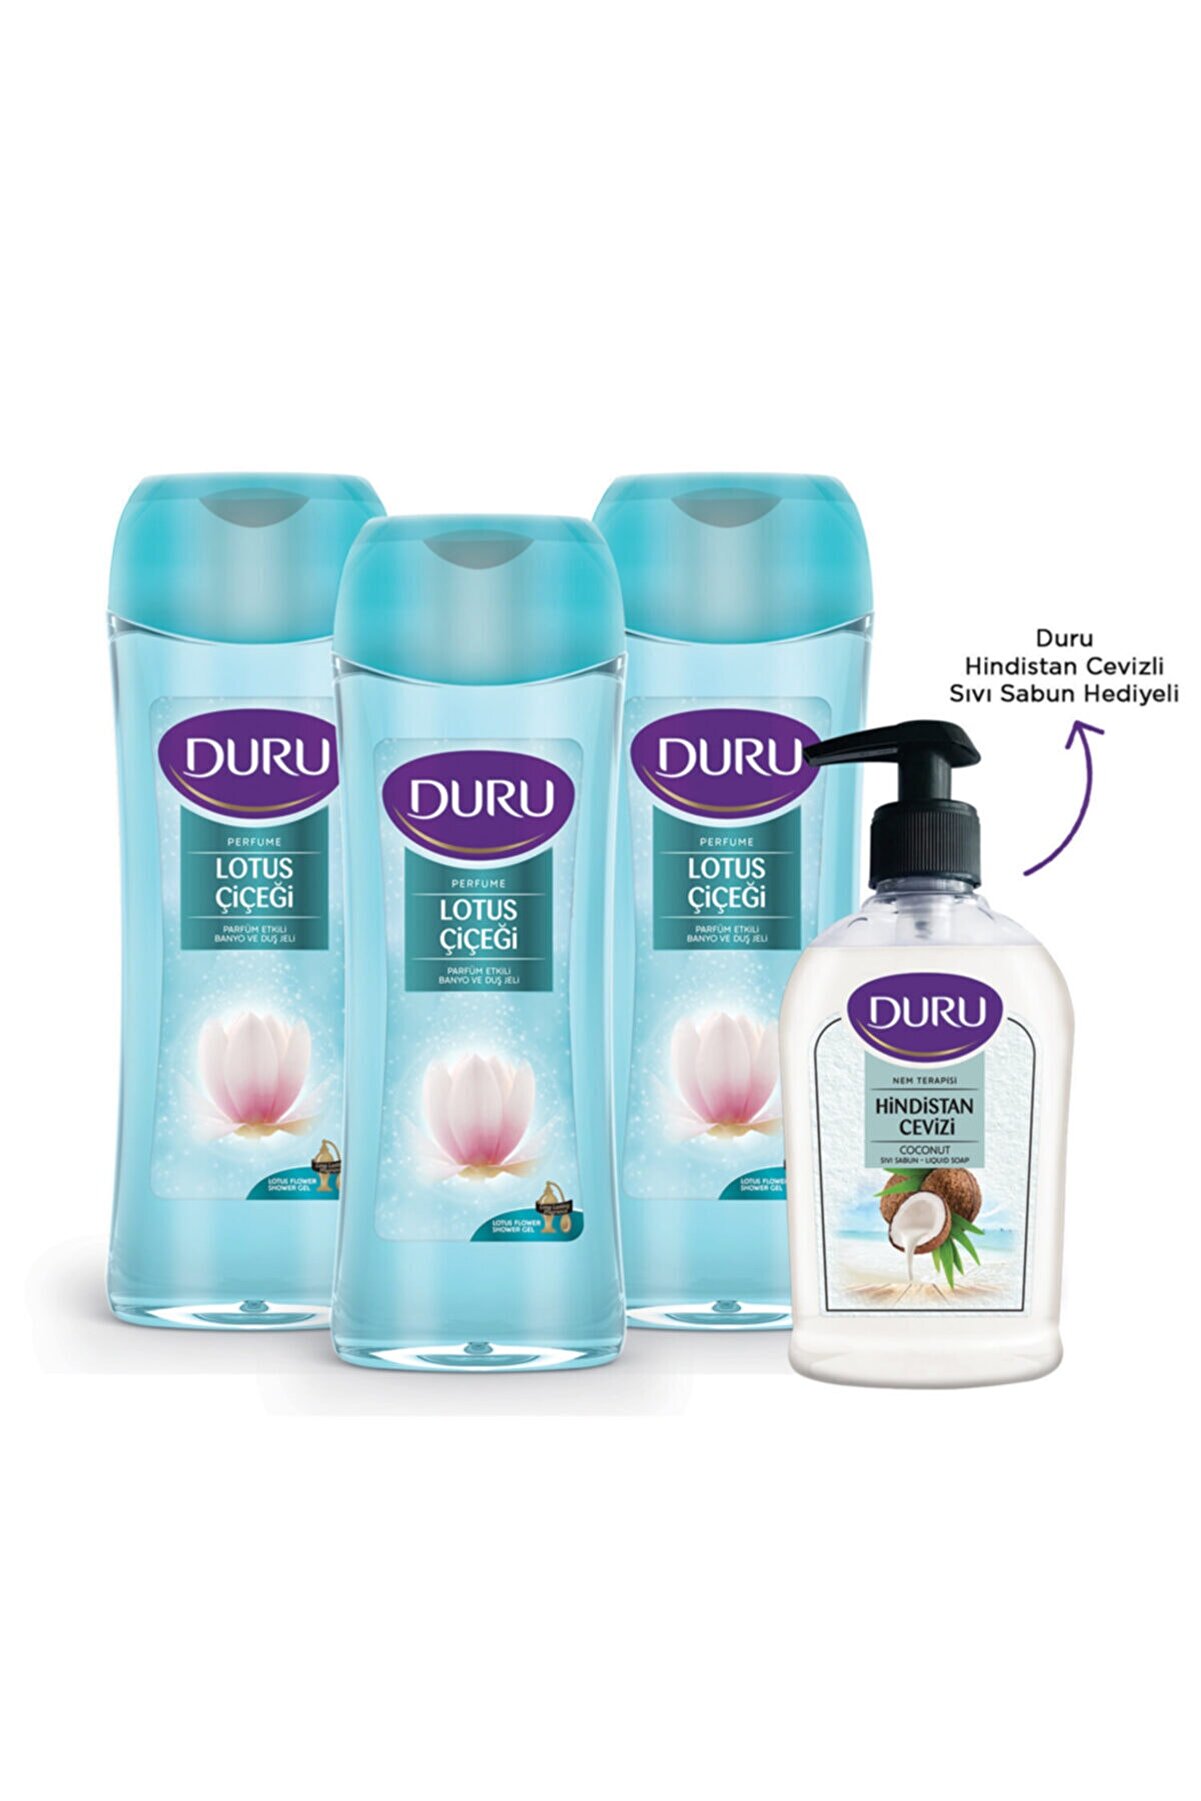 Duru Perfume Elegant Lotus Duş Jeli 3x450ml+ Hindistan Cevizli Sıvı Sabun Hediyeli